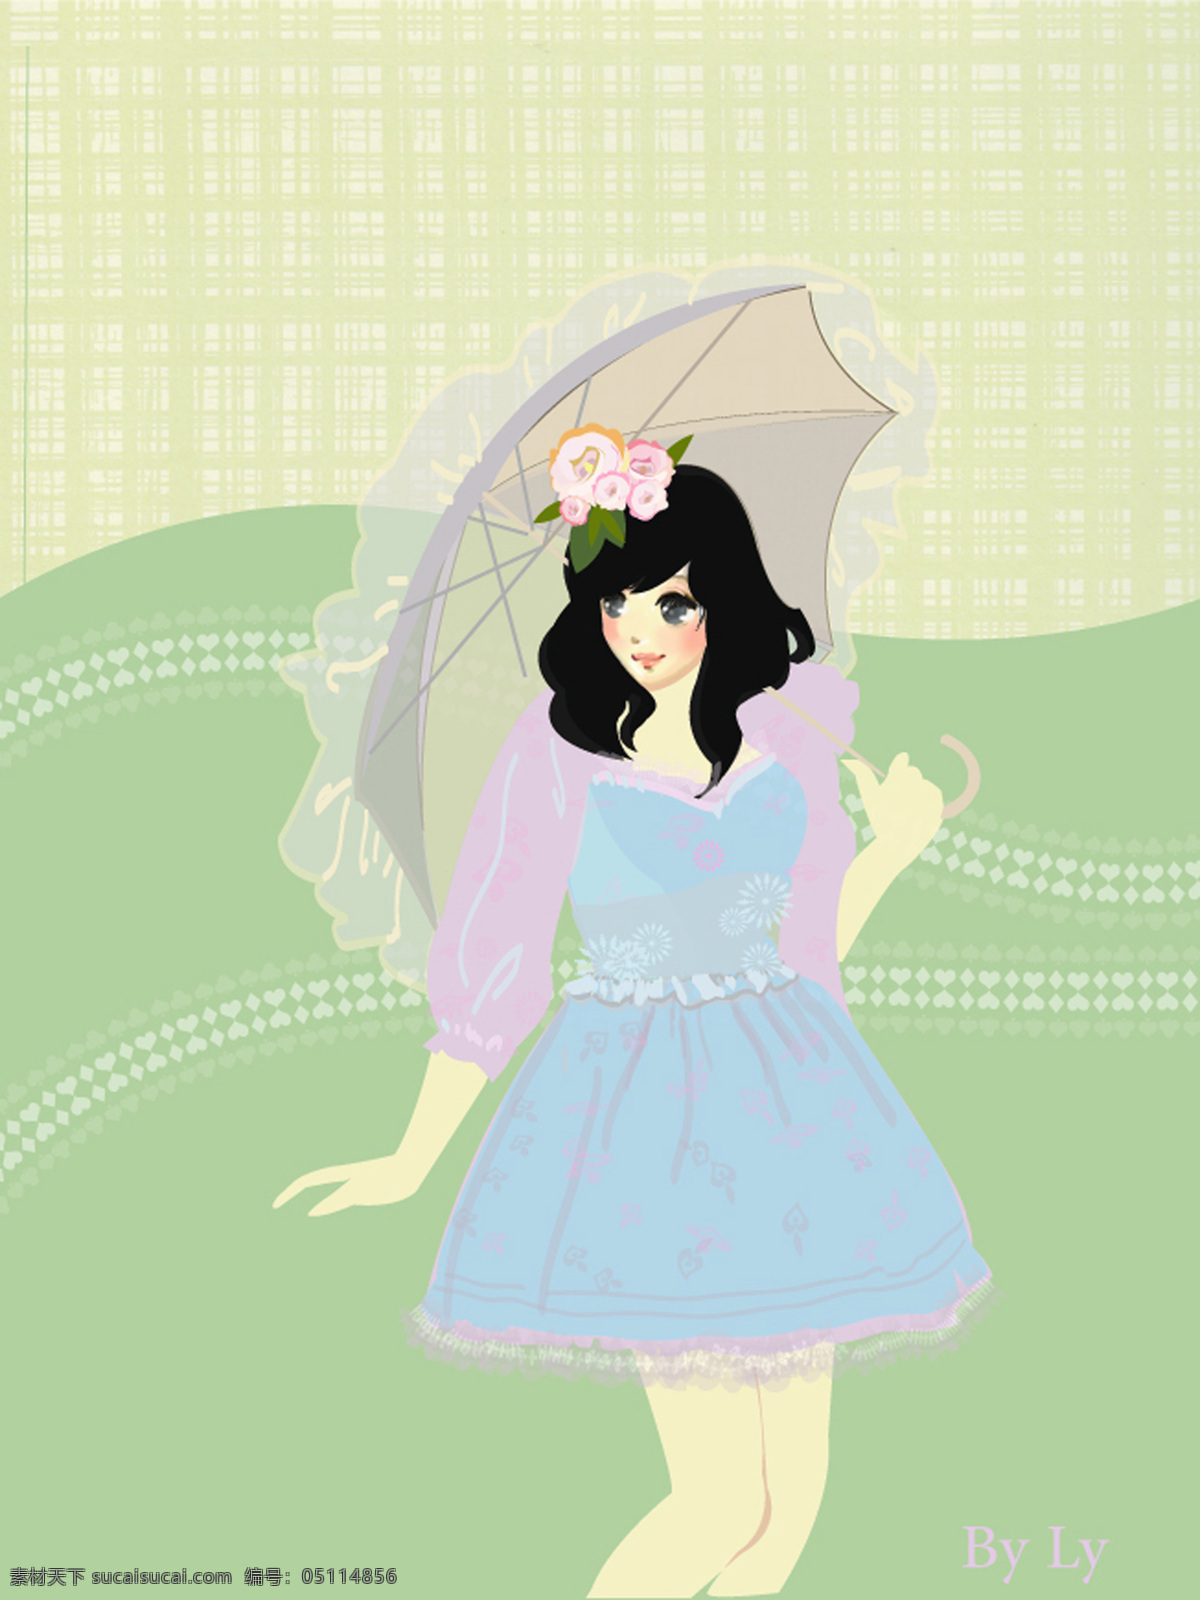 清凉 夏天 服装设计 女郎 水绿色背景 粉色上衣 蓝裙子 花雨伞 书籍 报刊杂志 插画 文化艺术